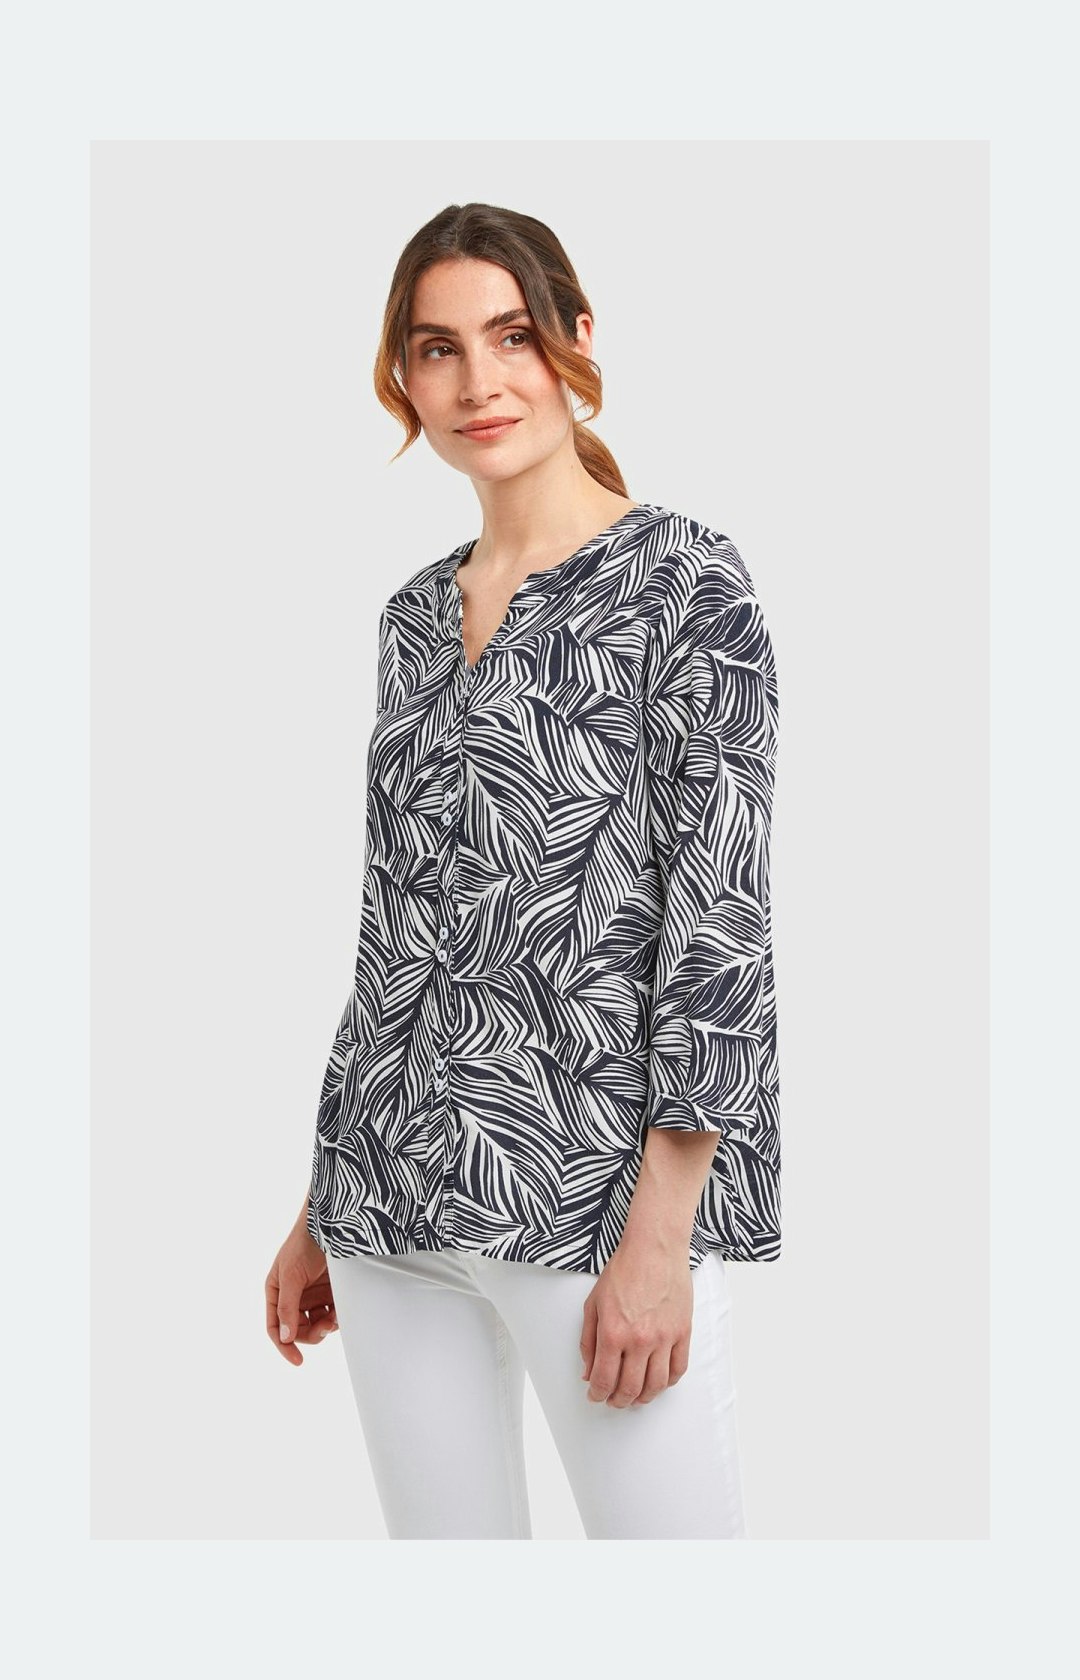 ¾-Arm Blusenshirt mit floralem Muster